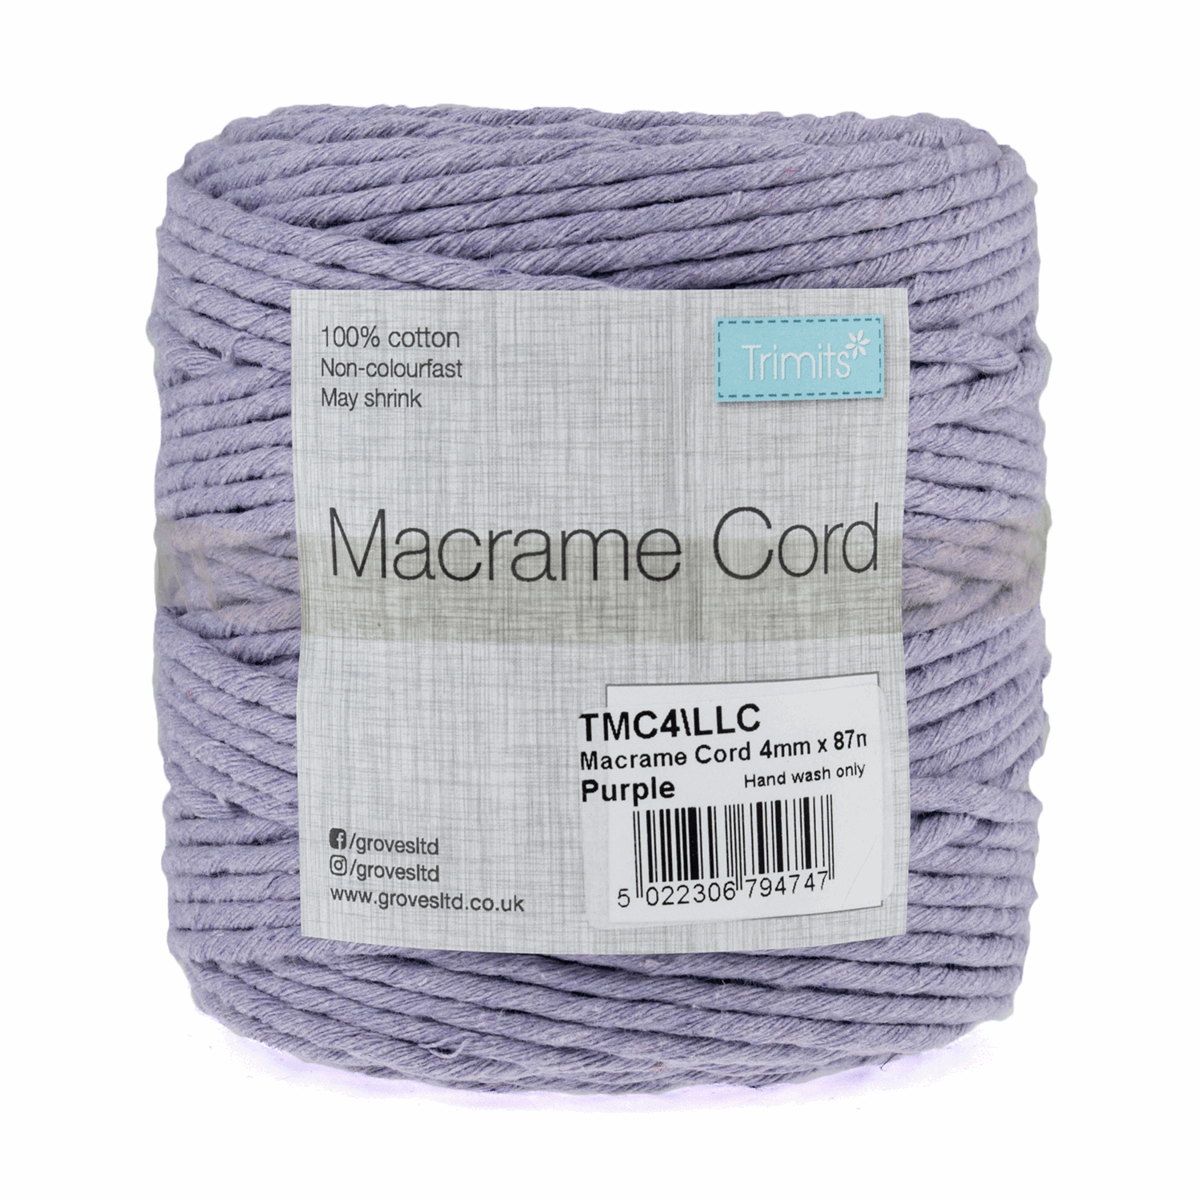 Lilac Macrame Cord - 87m x 4mm